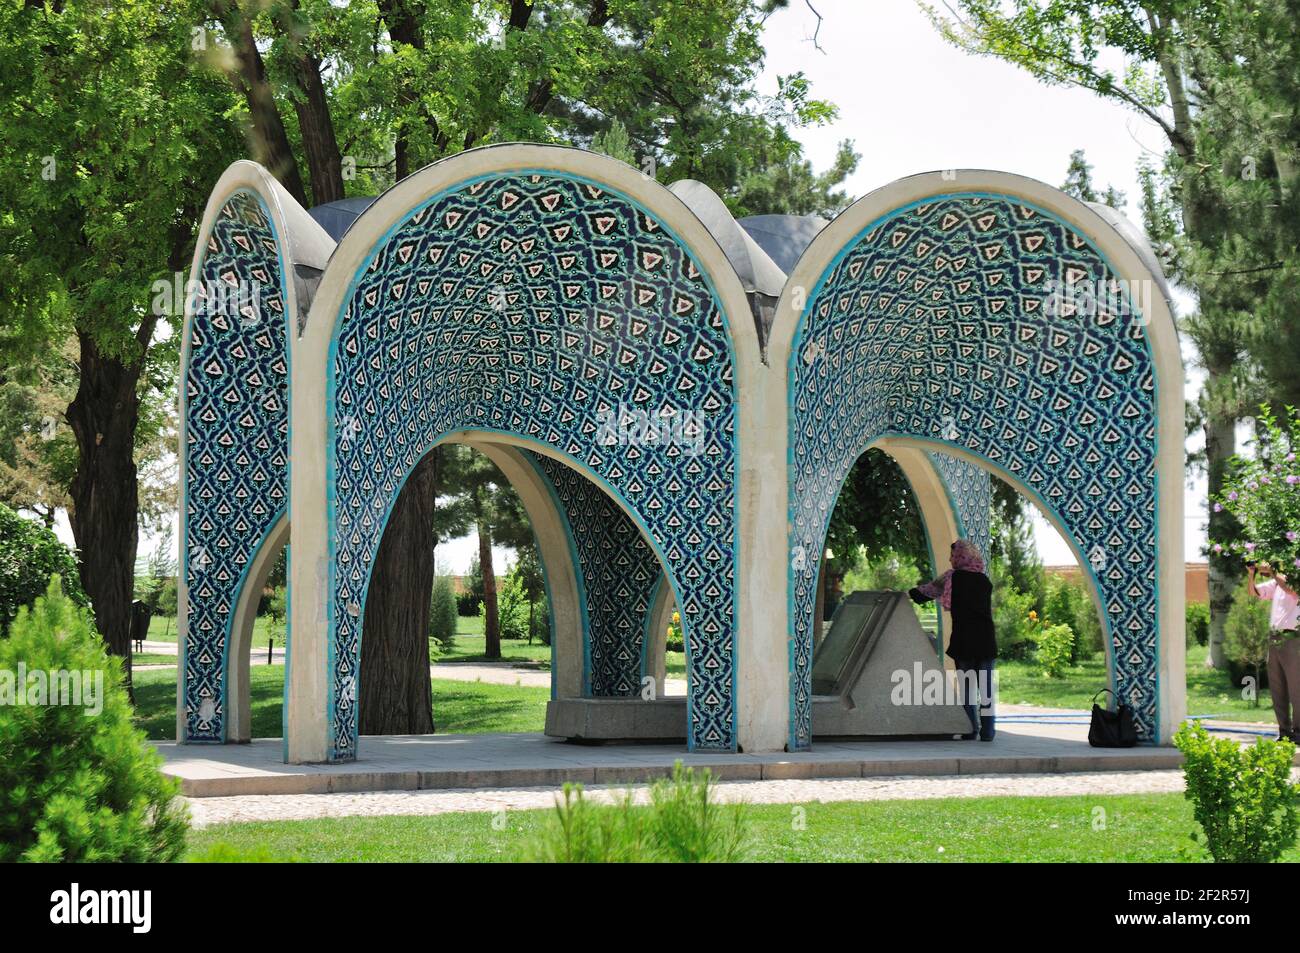 Das Mausoleum des iranischen Malers Kemal'ul Mulk. Der eigentliche Name des Malers ist Muhammed Gaffari. Das Mausoleum wurde 1940 erbaut. Nishapur, Iran. Stockfoto